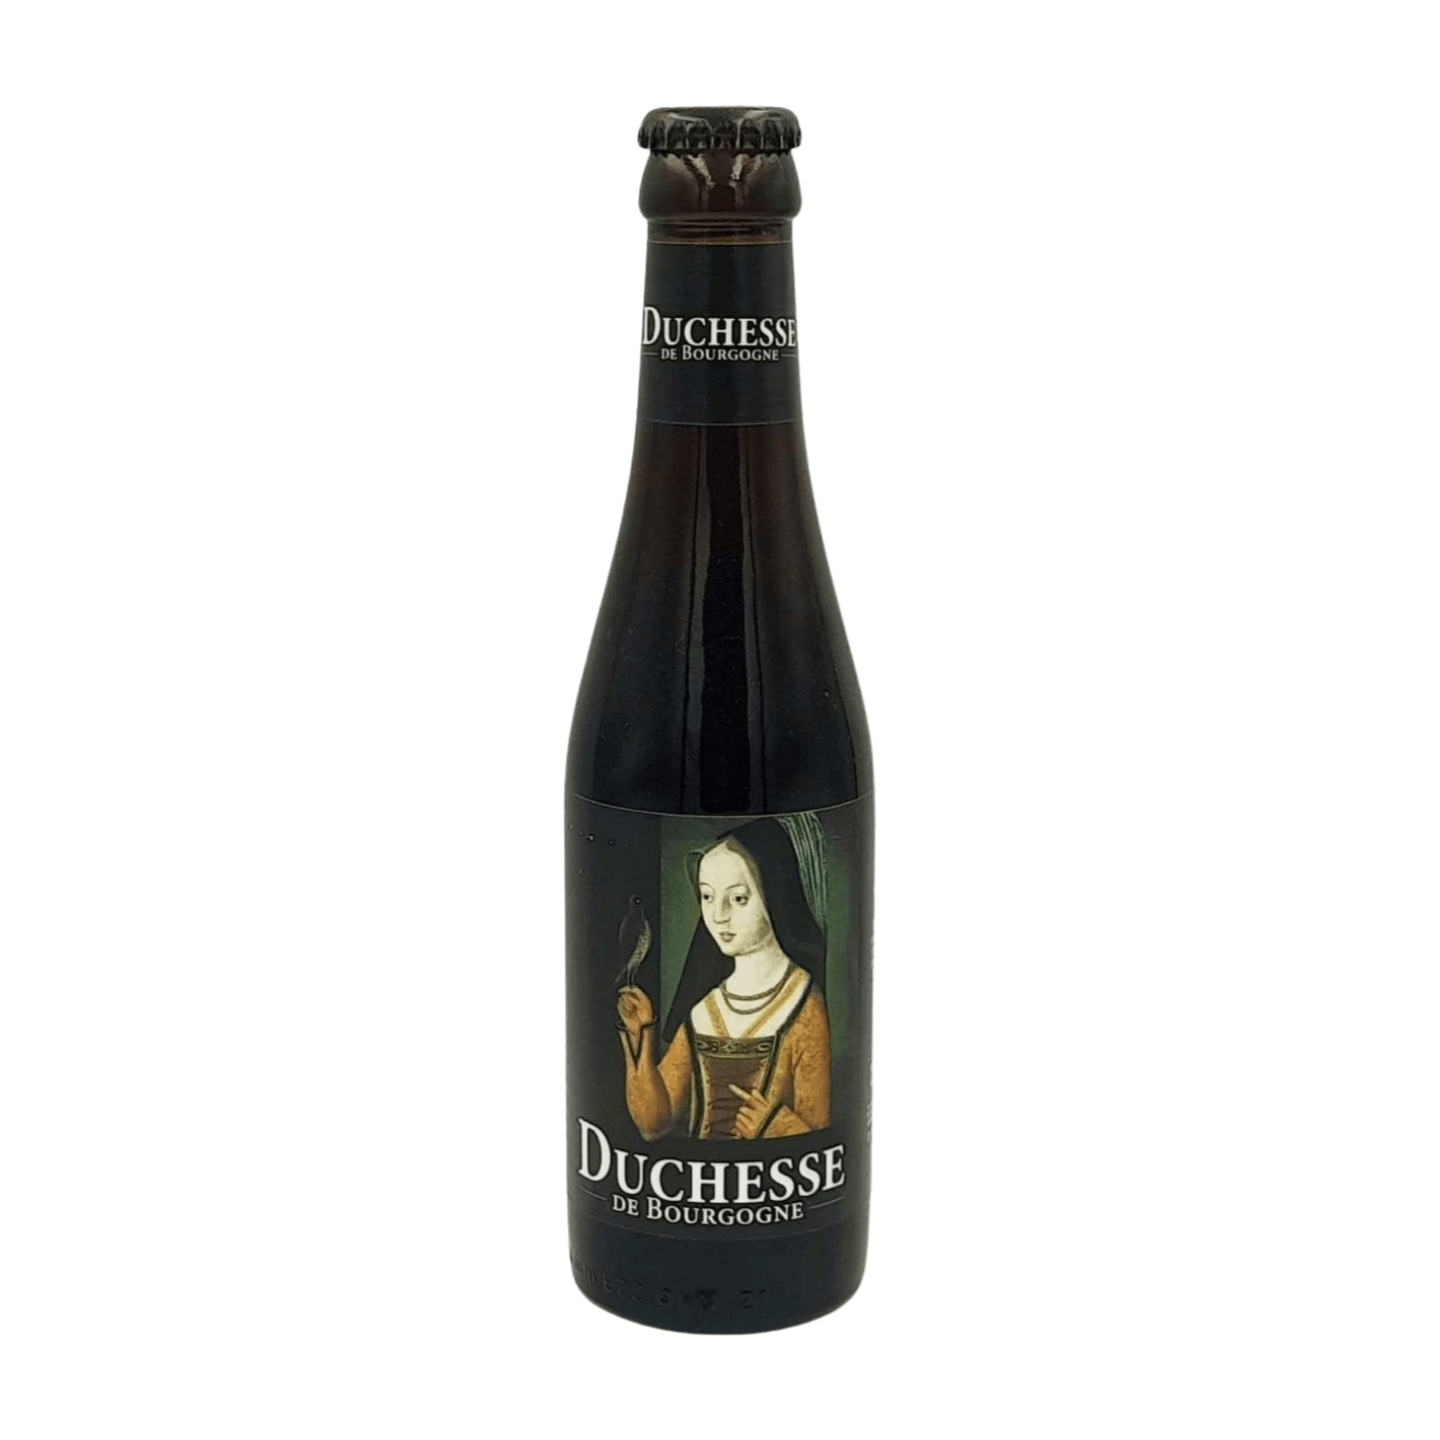 Brouwerij Verhaeghe Duchesse de Bourgogne | Flanders Red Ale Webshop Online Verdins Bierwinkel Rotterdam